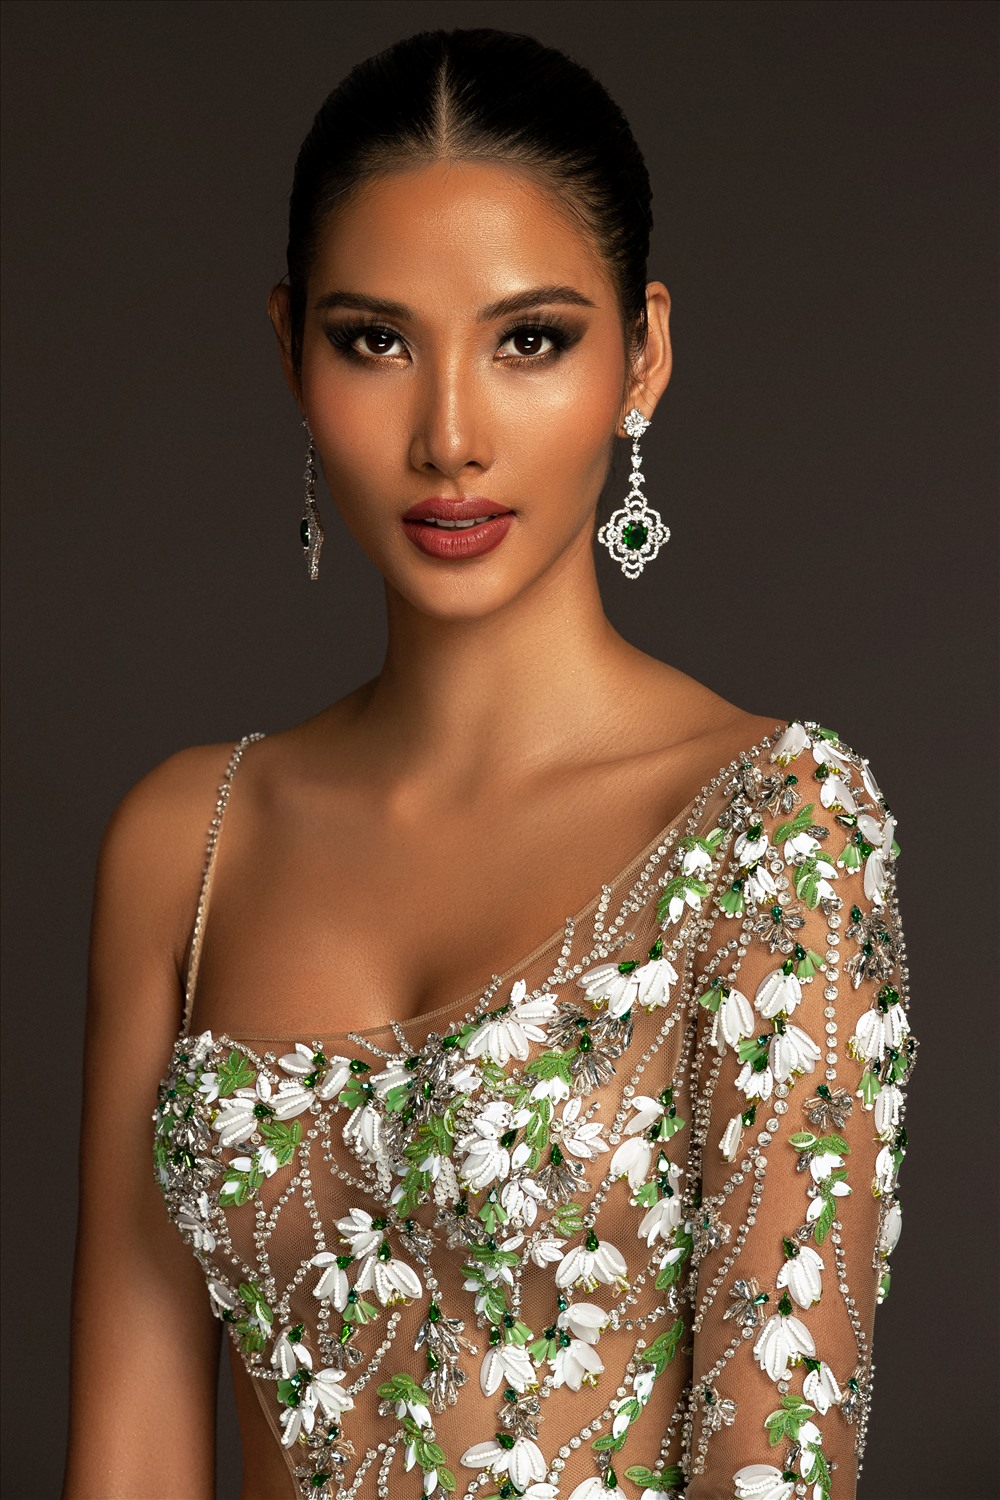 Nhà thiết kế sử dụng ý tưởng loài hoa giọt tuyết làm chất liệu sáng tạo mẫu đầm dành riêng cho Á hậu Hoàng Thùy tại Miss Universe 2019. Ảnh: Mr.AT.